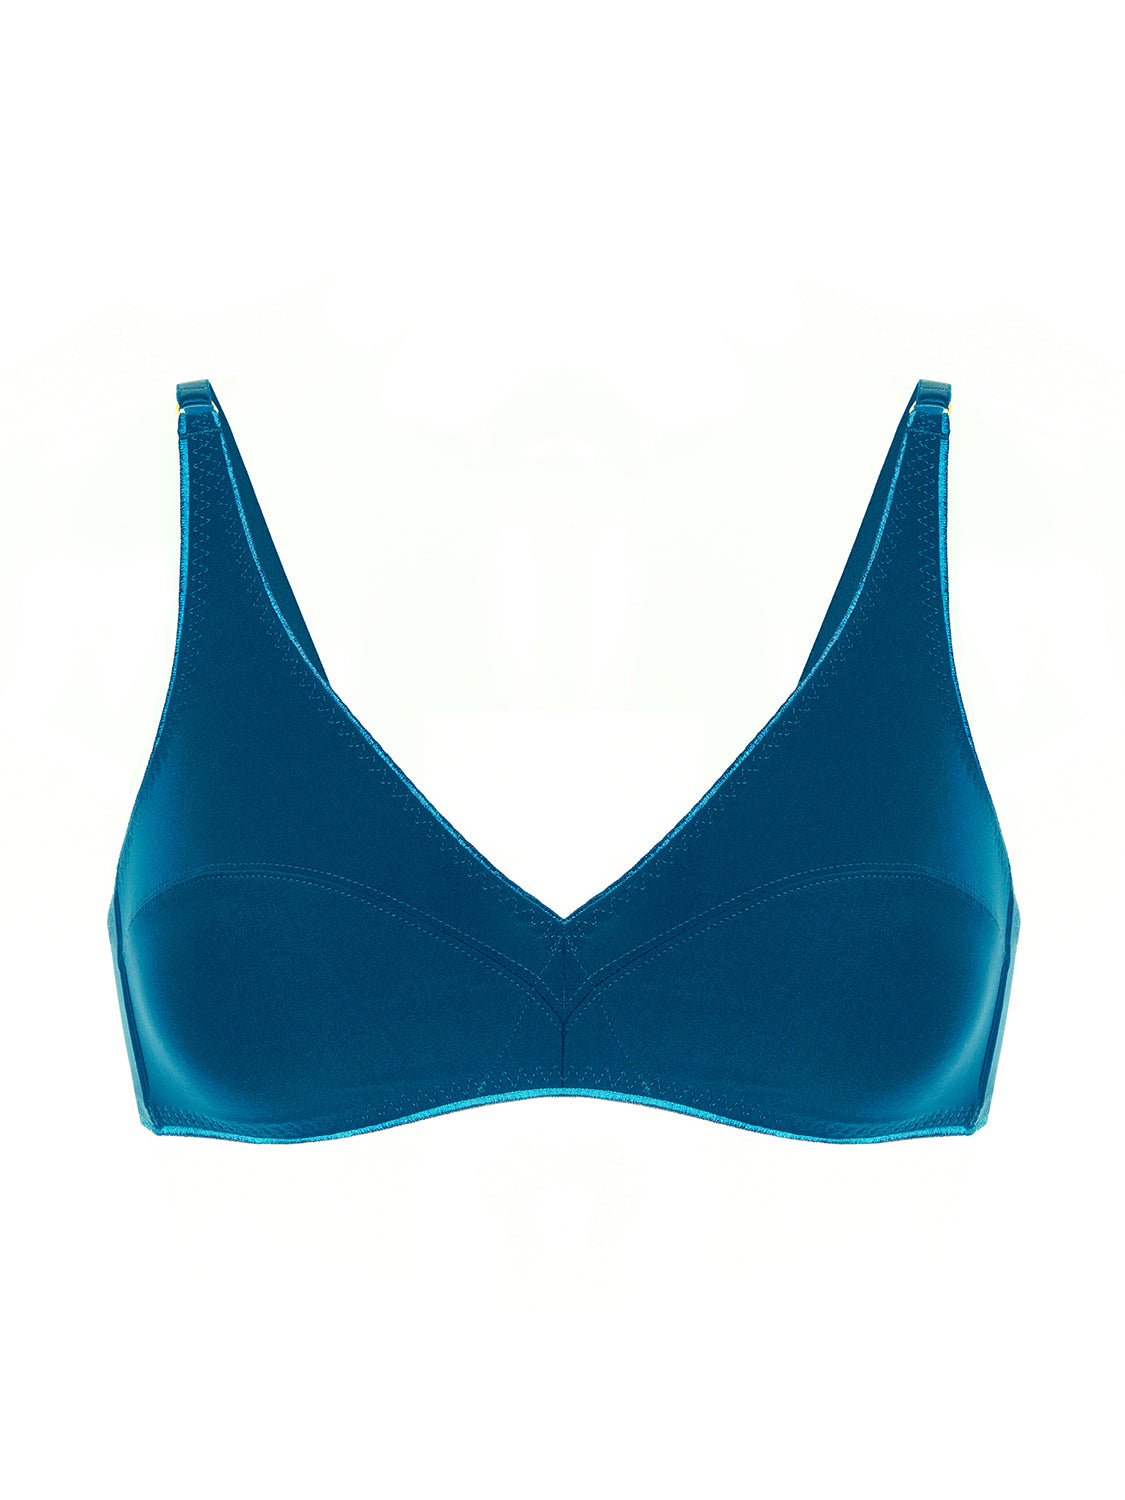 soft-cup-triangle-bra-poseidon-blue-artifice-21